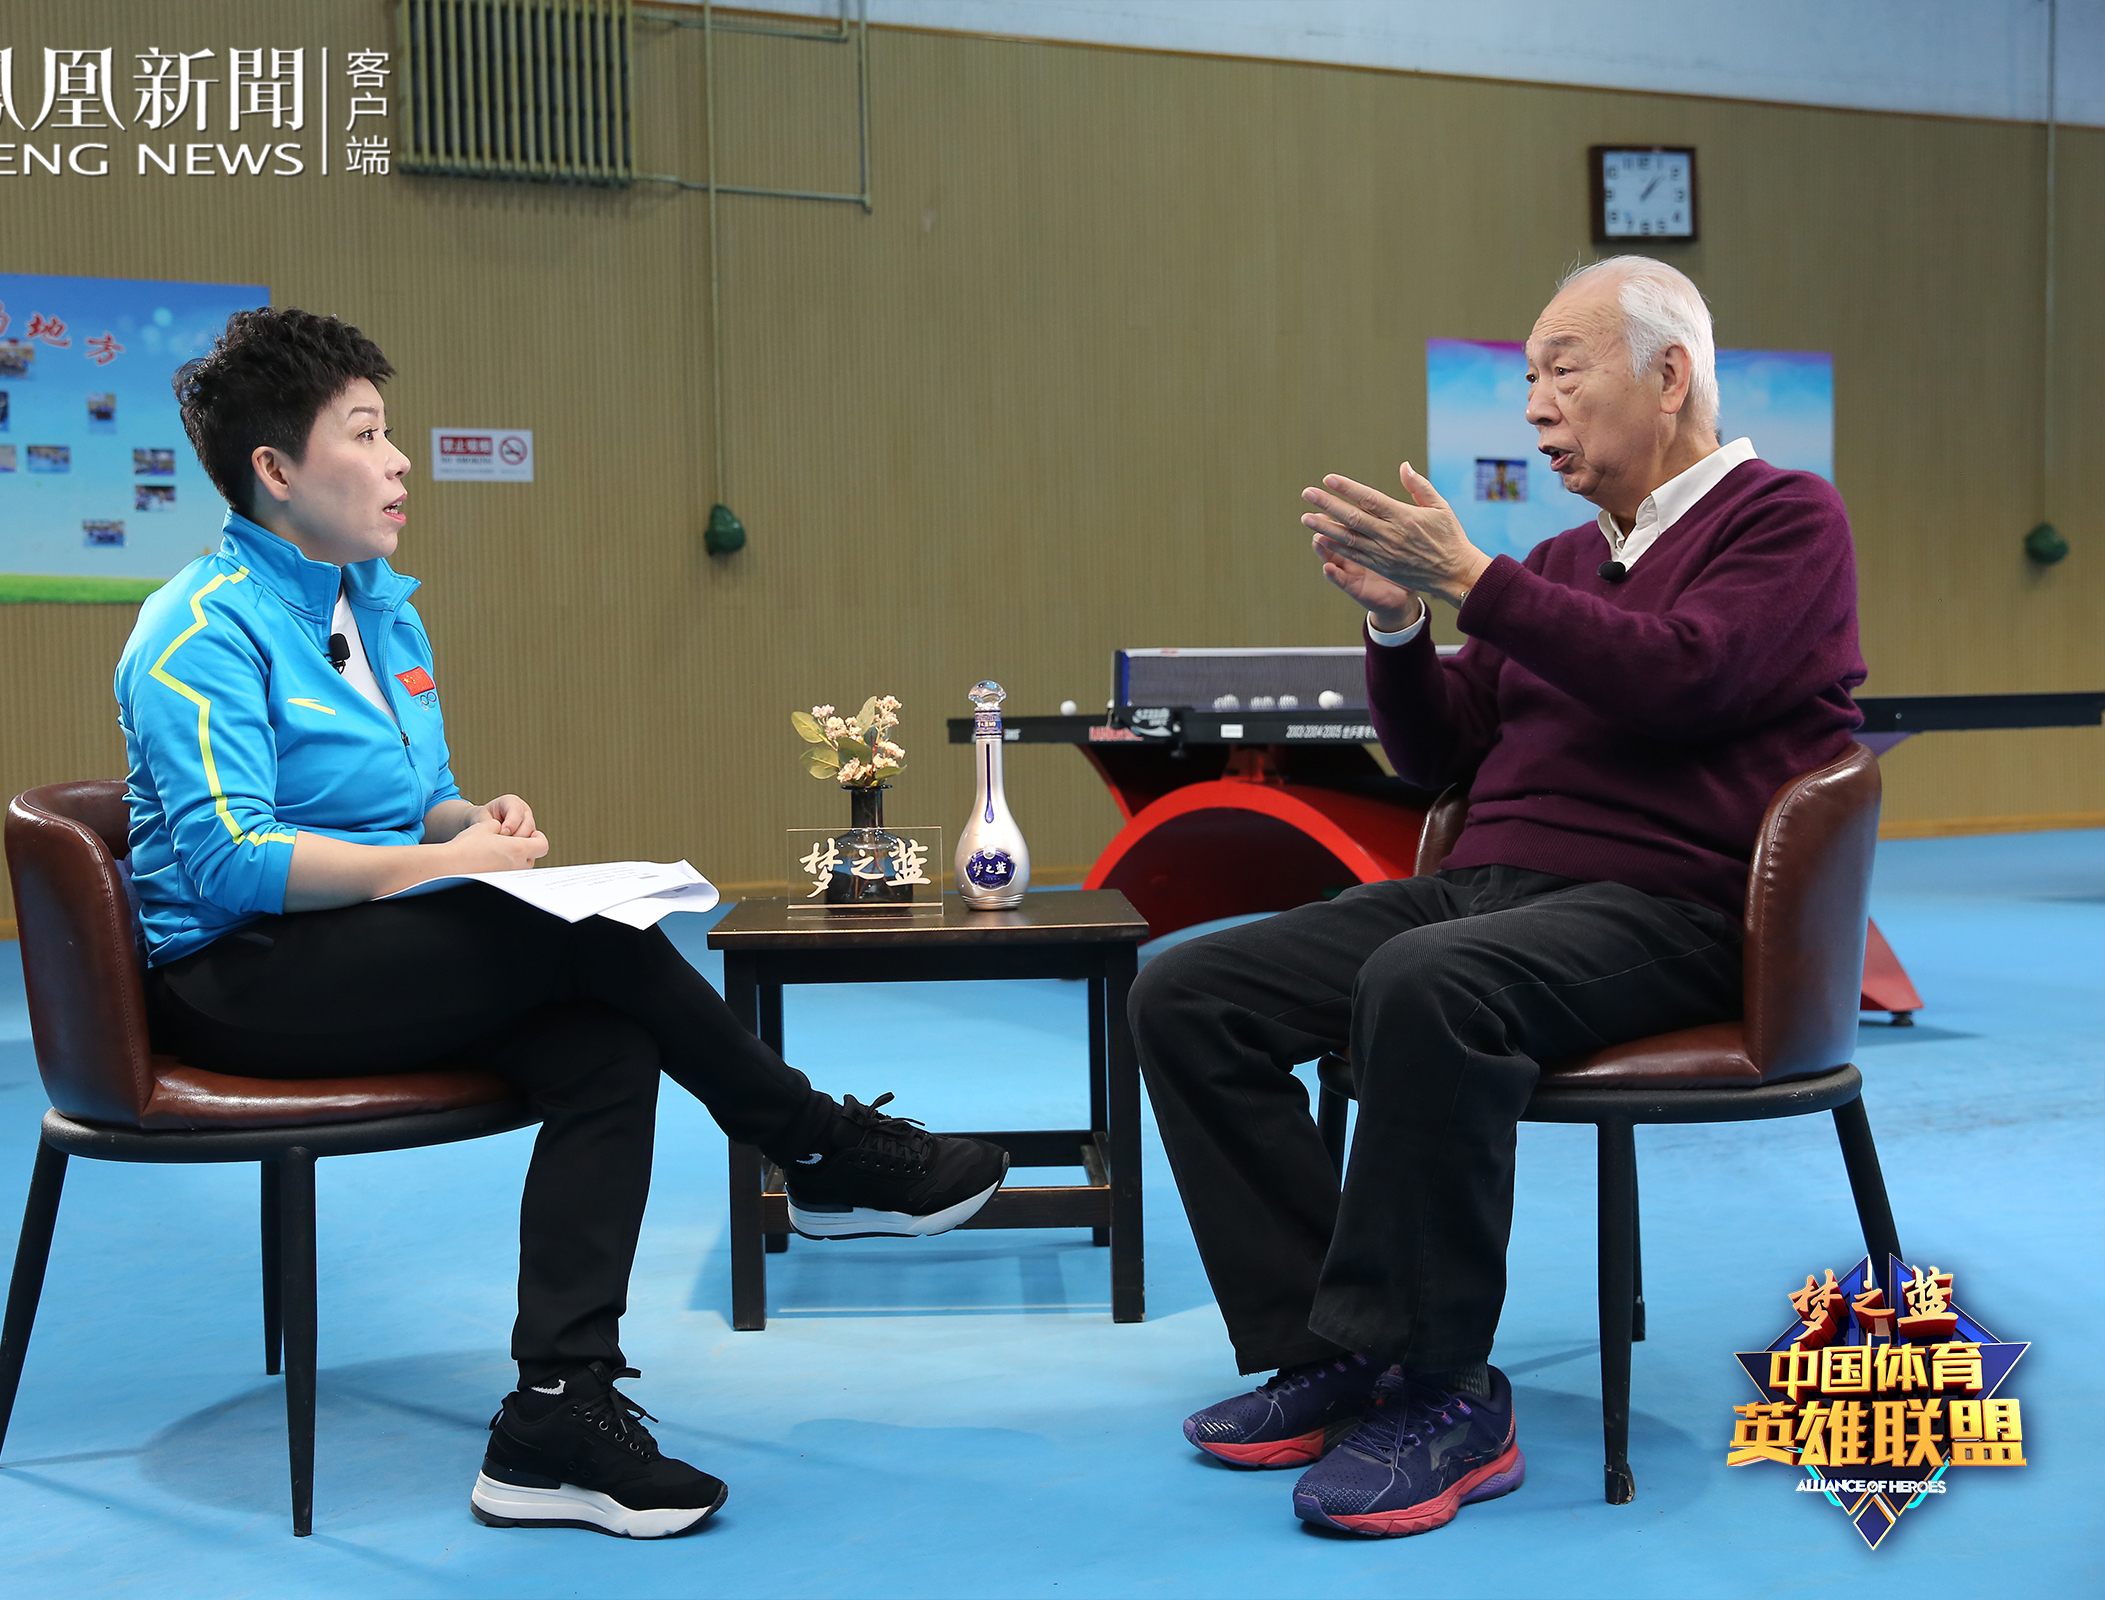  张燮林79岁高龄秀球技